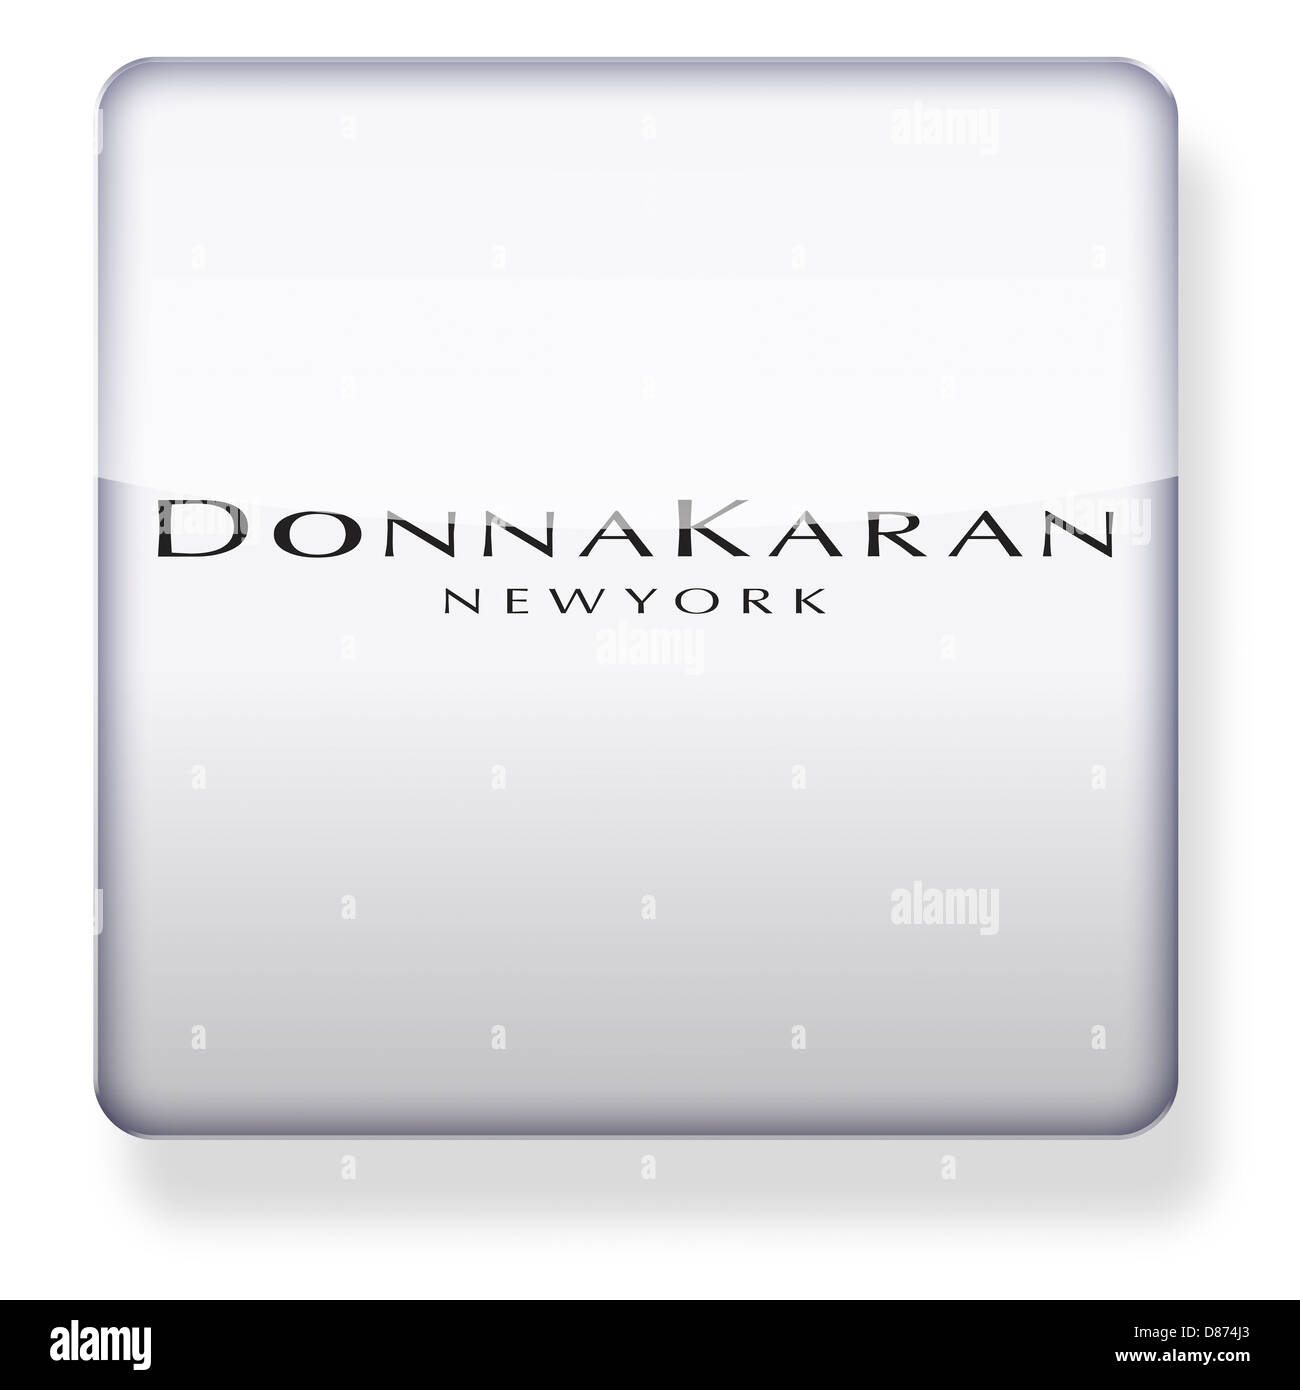 Donna karan logo hi-res stock photography and images - Alamy